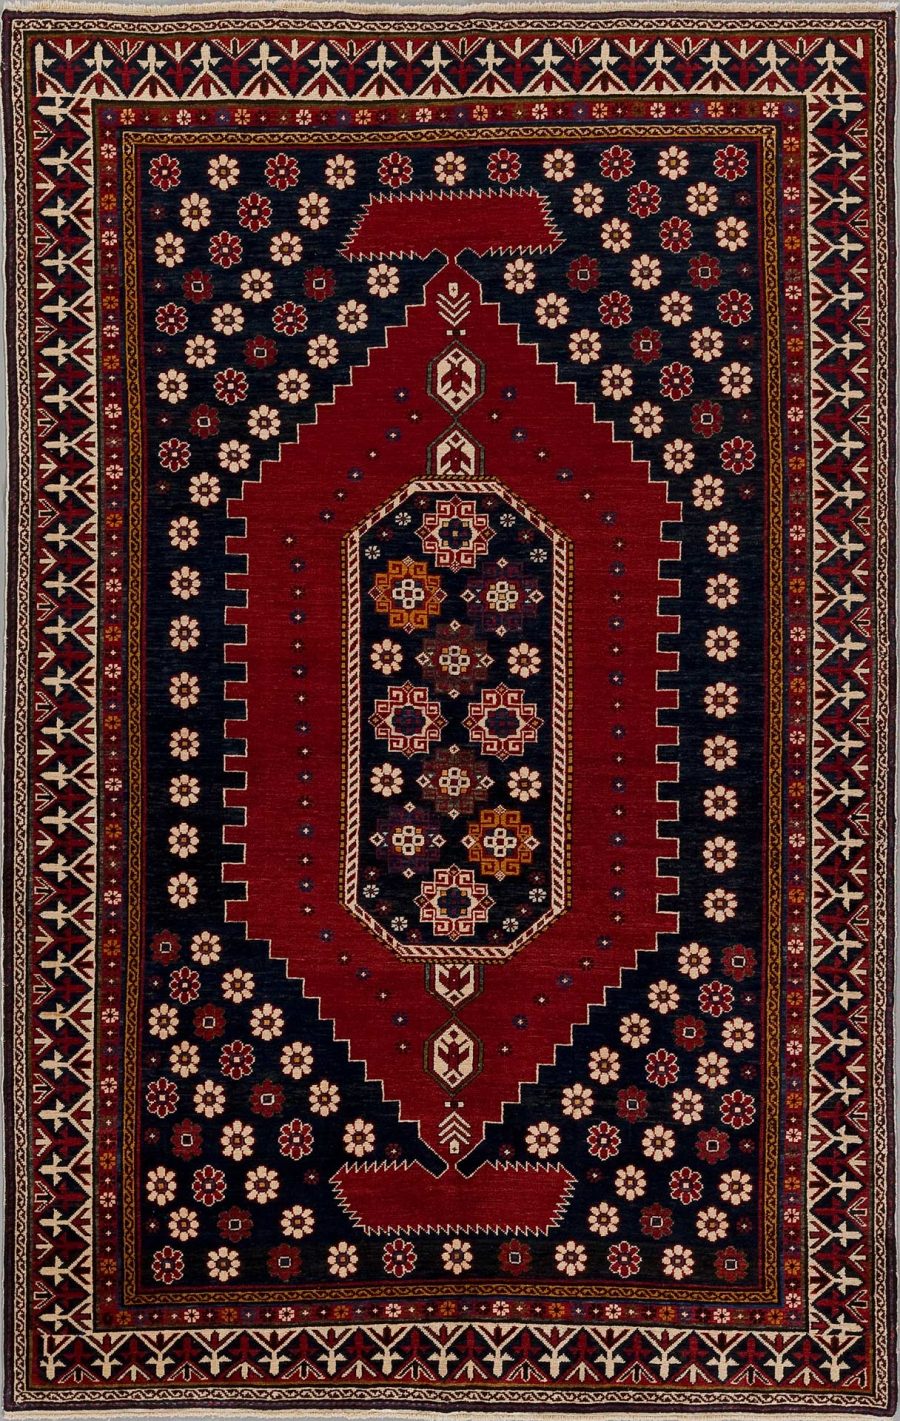 Traditioneller handgeknüpfter Teppich mit kompliziertem Muster, das hauptsächlich in Rottönen mit Akzenten in Blau, Weiß und Gold gehalten ist, umrahmt von mehreren dekorativen Bordüren.